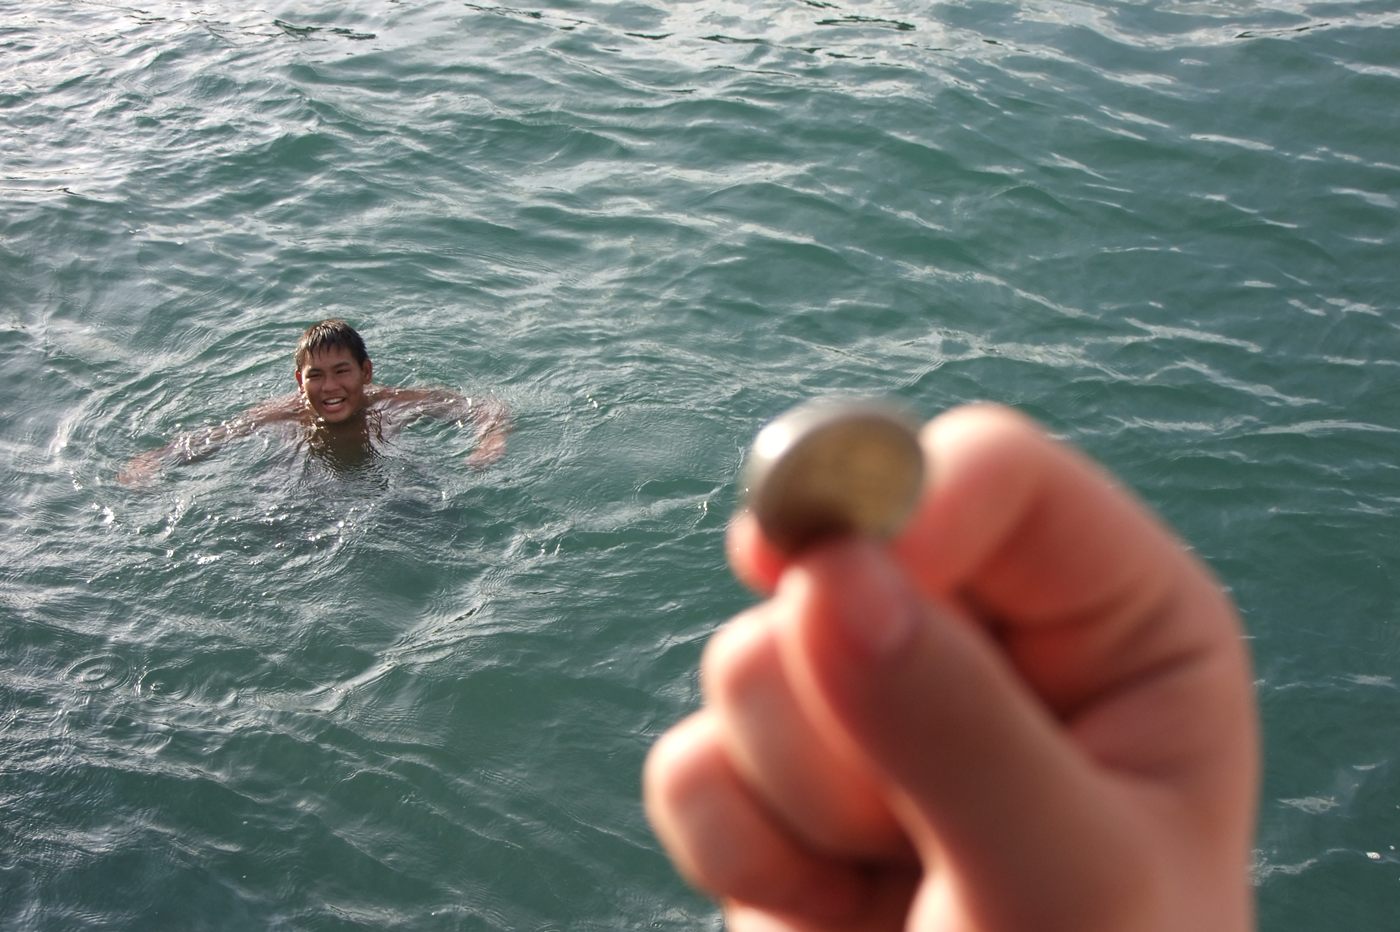 บริเวรท่าเรือจะมีเด็กๆมาดำน้ำเก็บเหรียญที่โยนลงไป